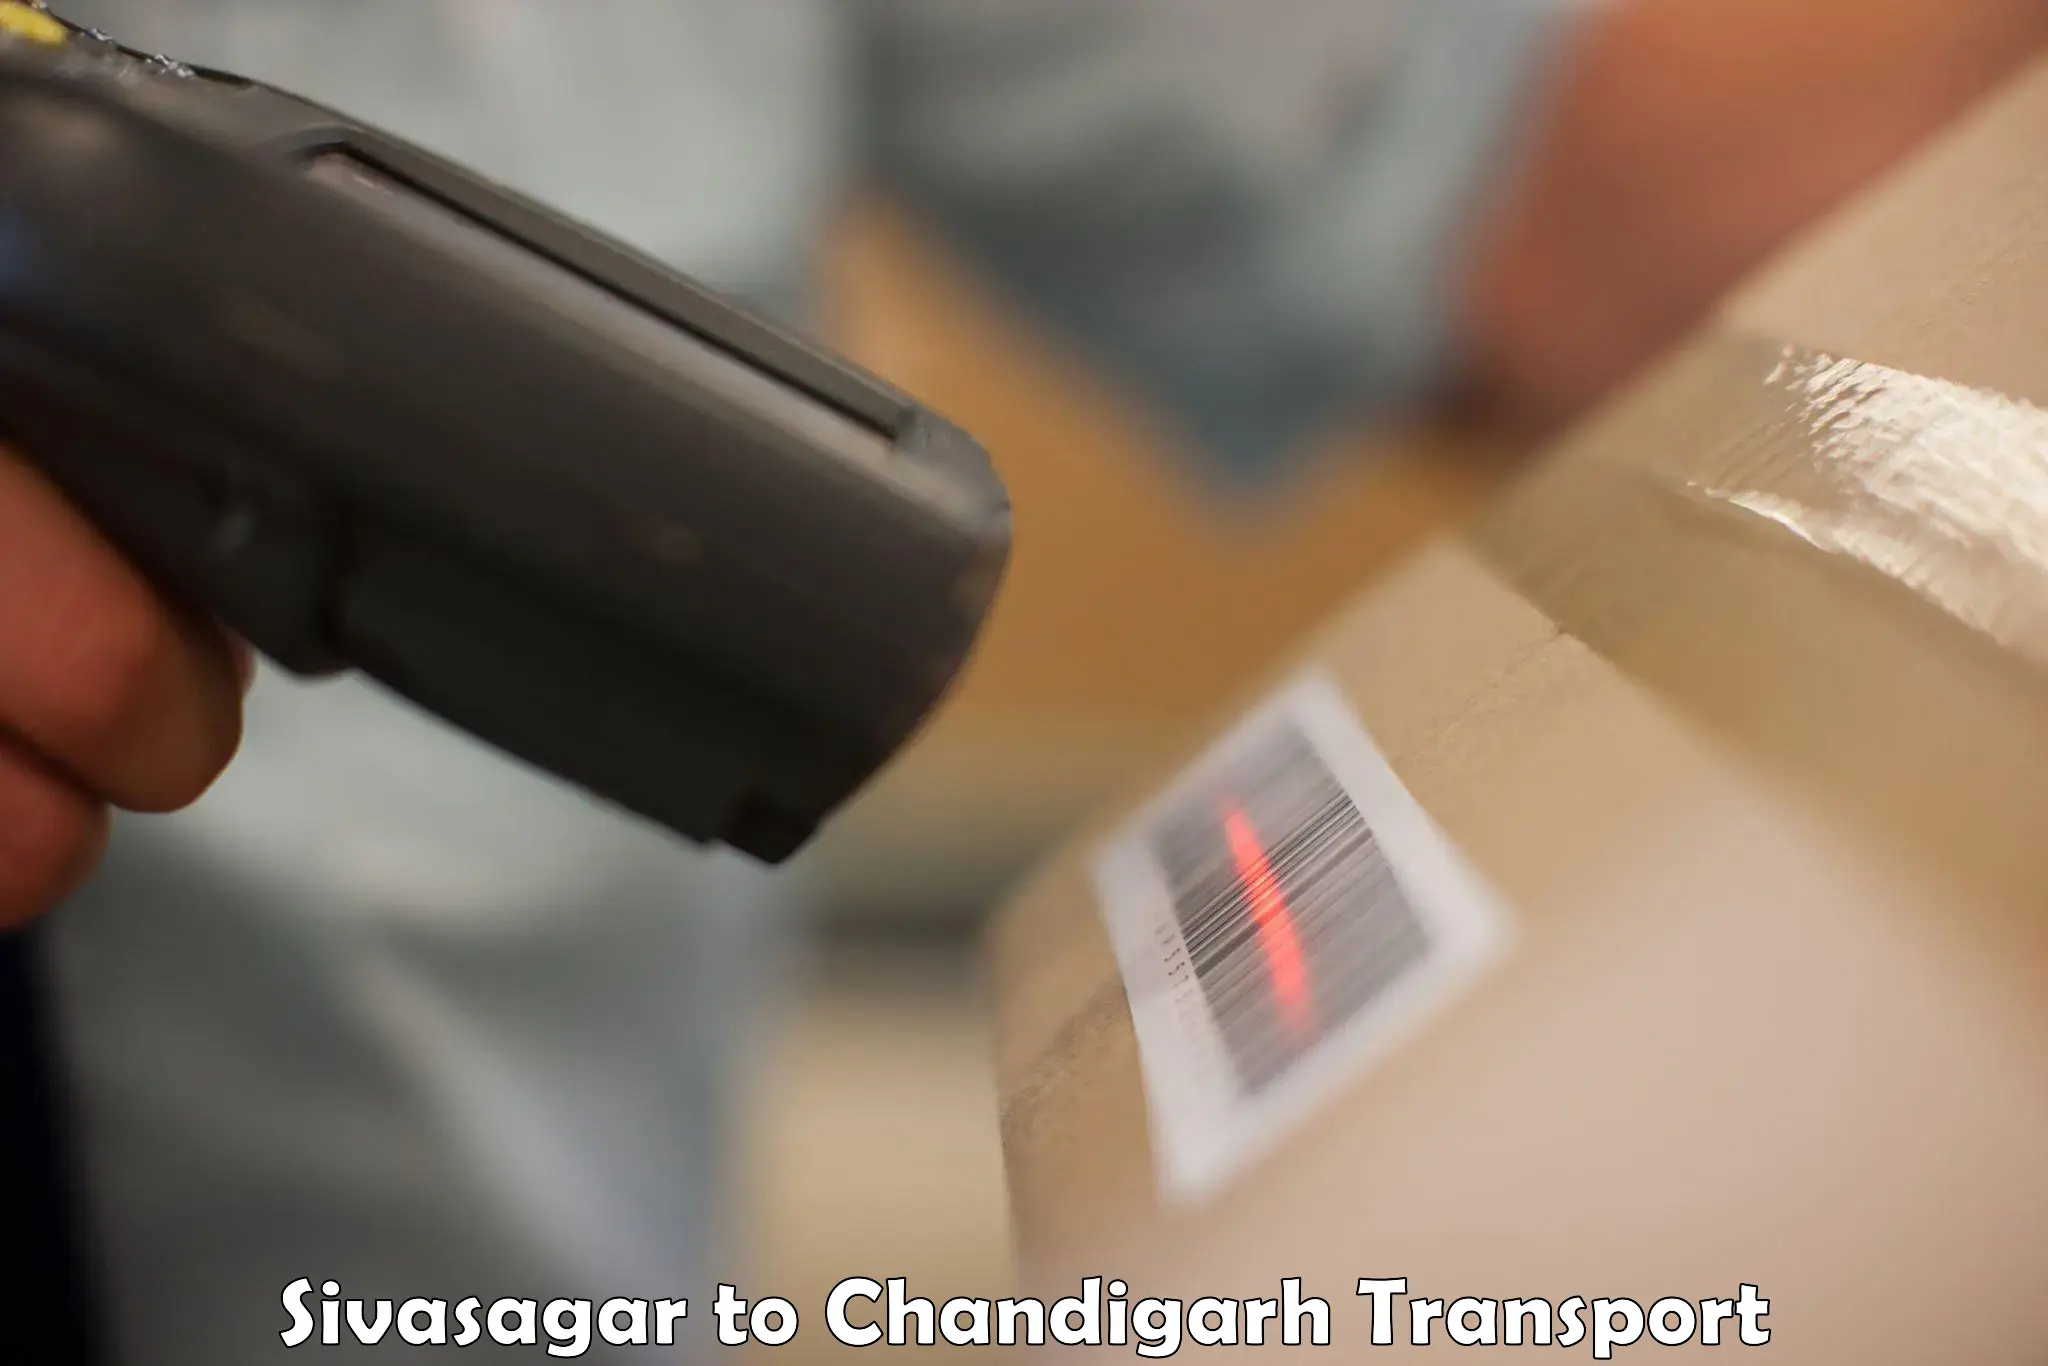 Nationwide transport services Sivasagar to Chandigarh